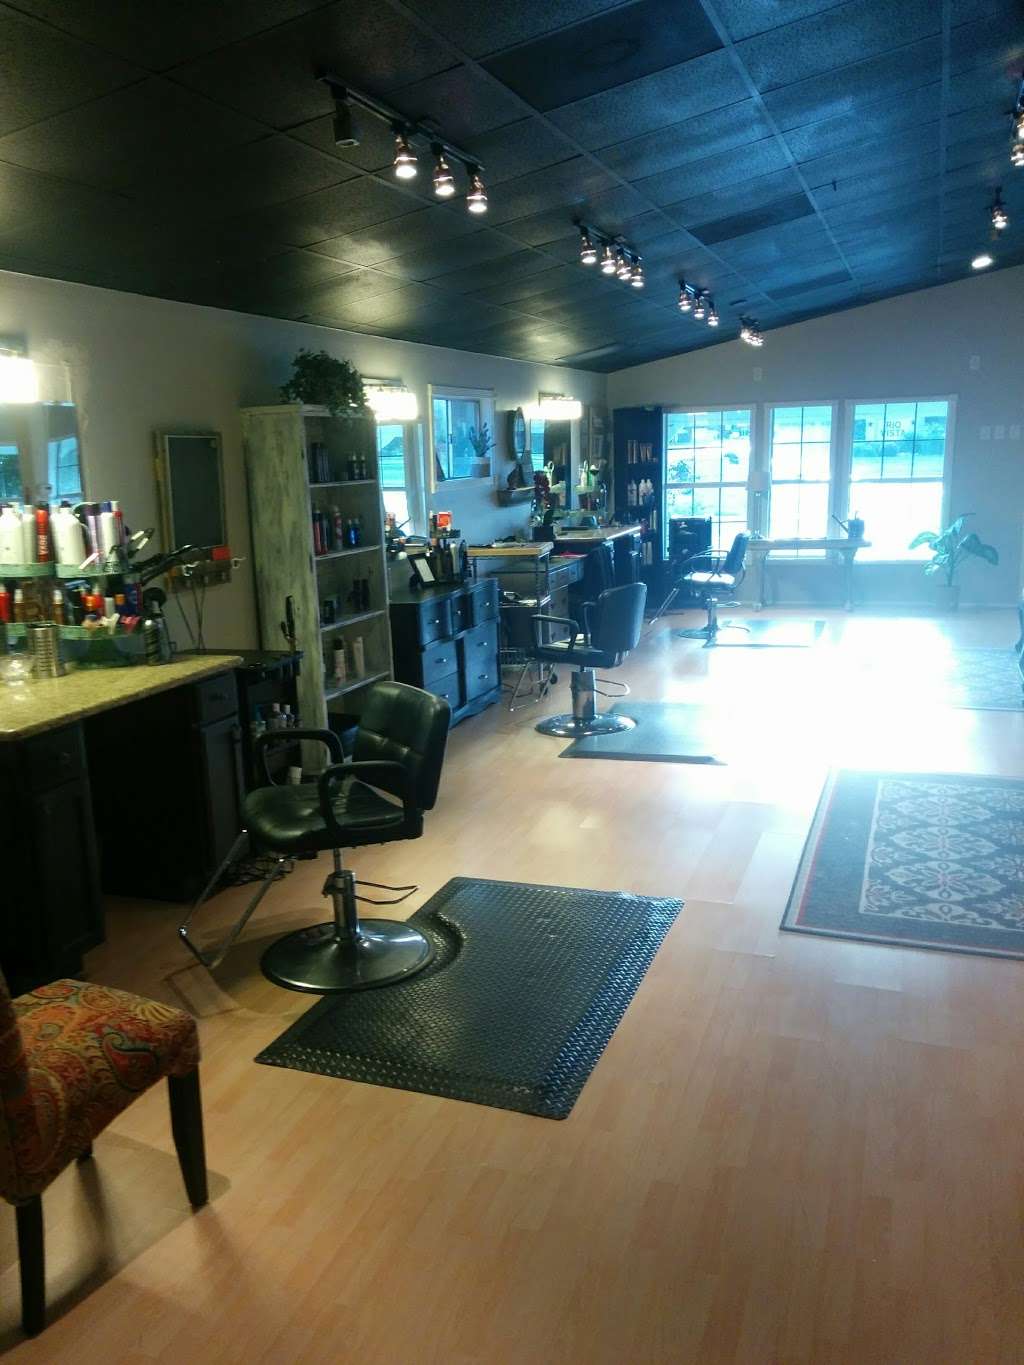 Just Friends Hair Salon | 906 Farm to Market 359, Richmond, TX 77406, USA | Phone: (281) 239-7175